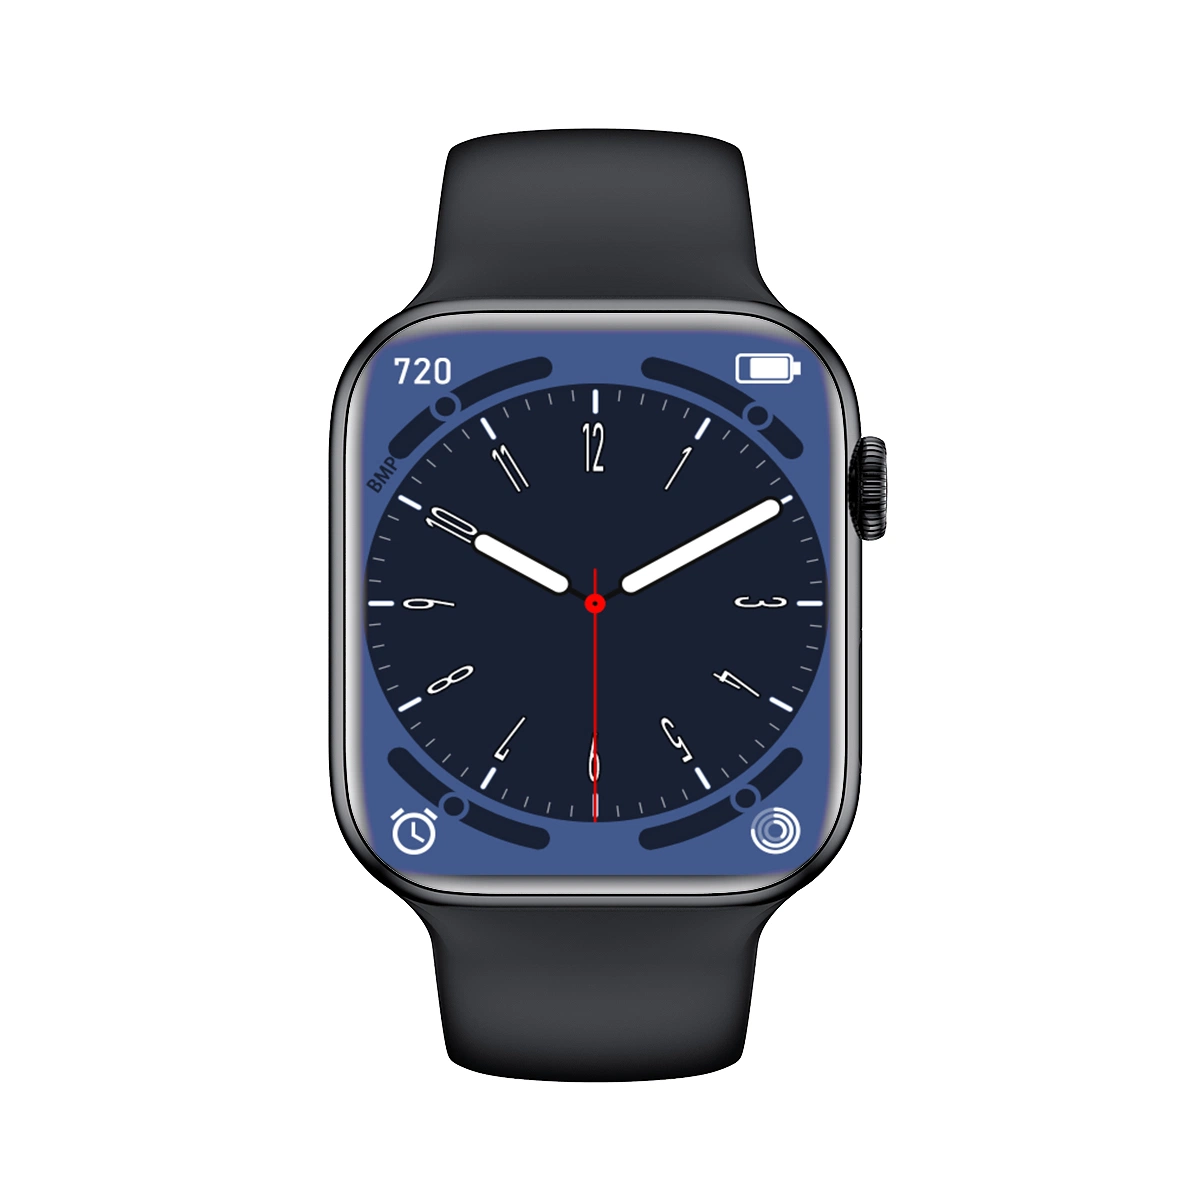 Venta al por mayor Moda Deporte Regalo Smartwatch para Android Apple Ios Mobile Teléfono muñeca Smart Watch